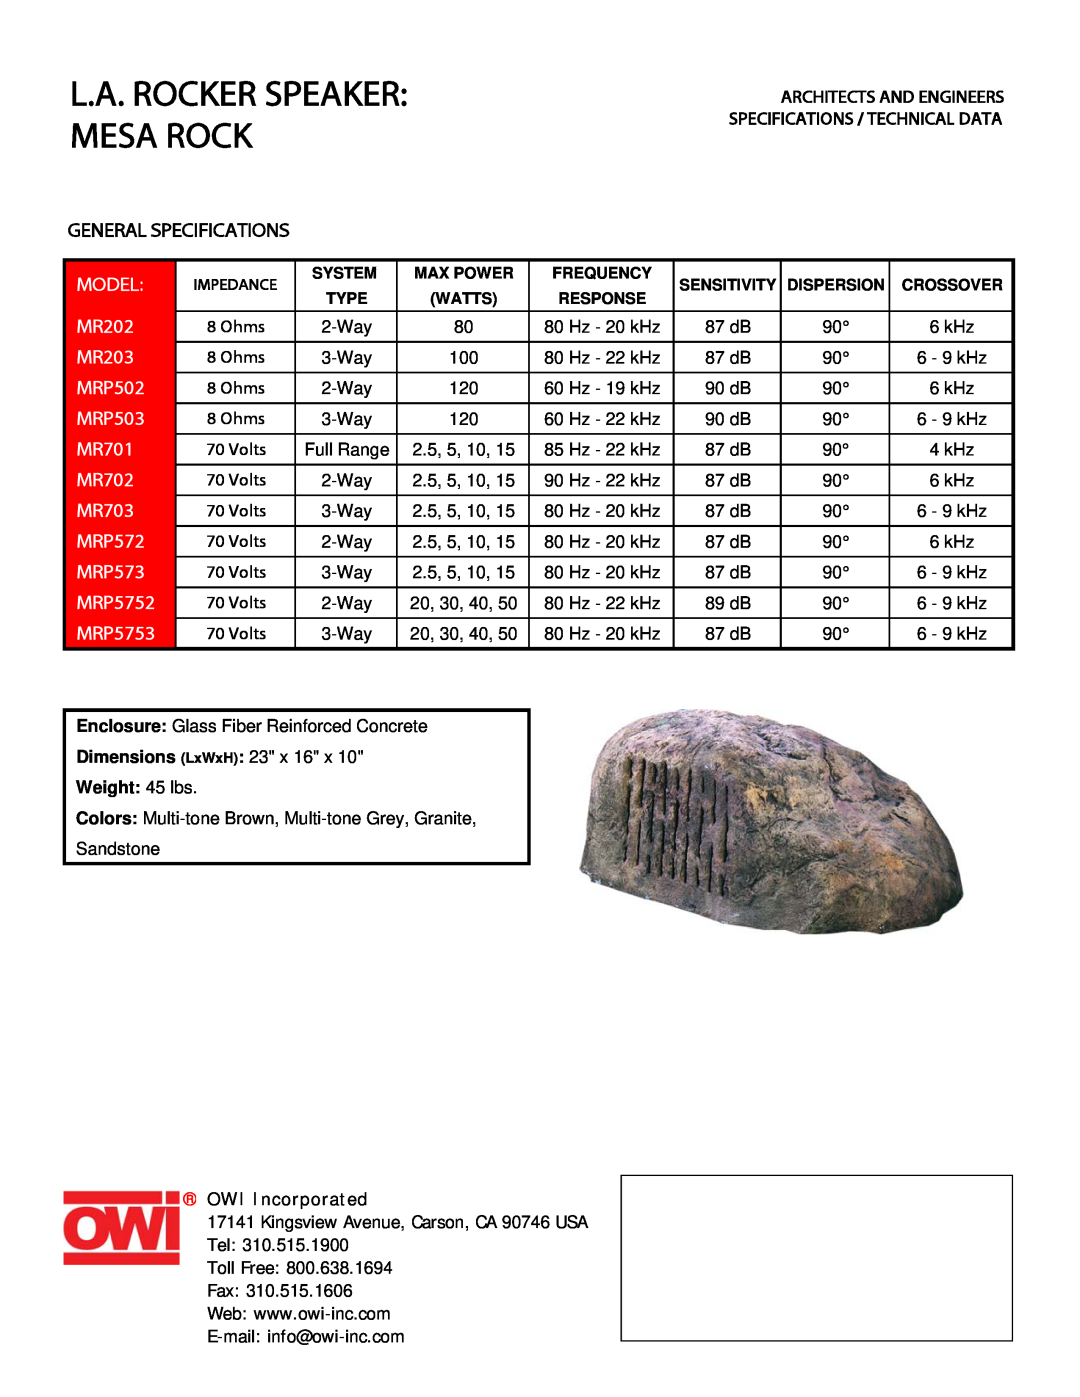 OWI MR703 specifications L.A. Rocker Speaker Mesa Rock, General Specifications, Model, MR202, MR203, MRP502, MRP503, MR701 